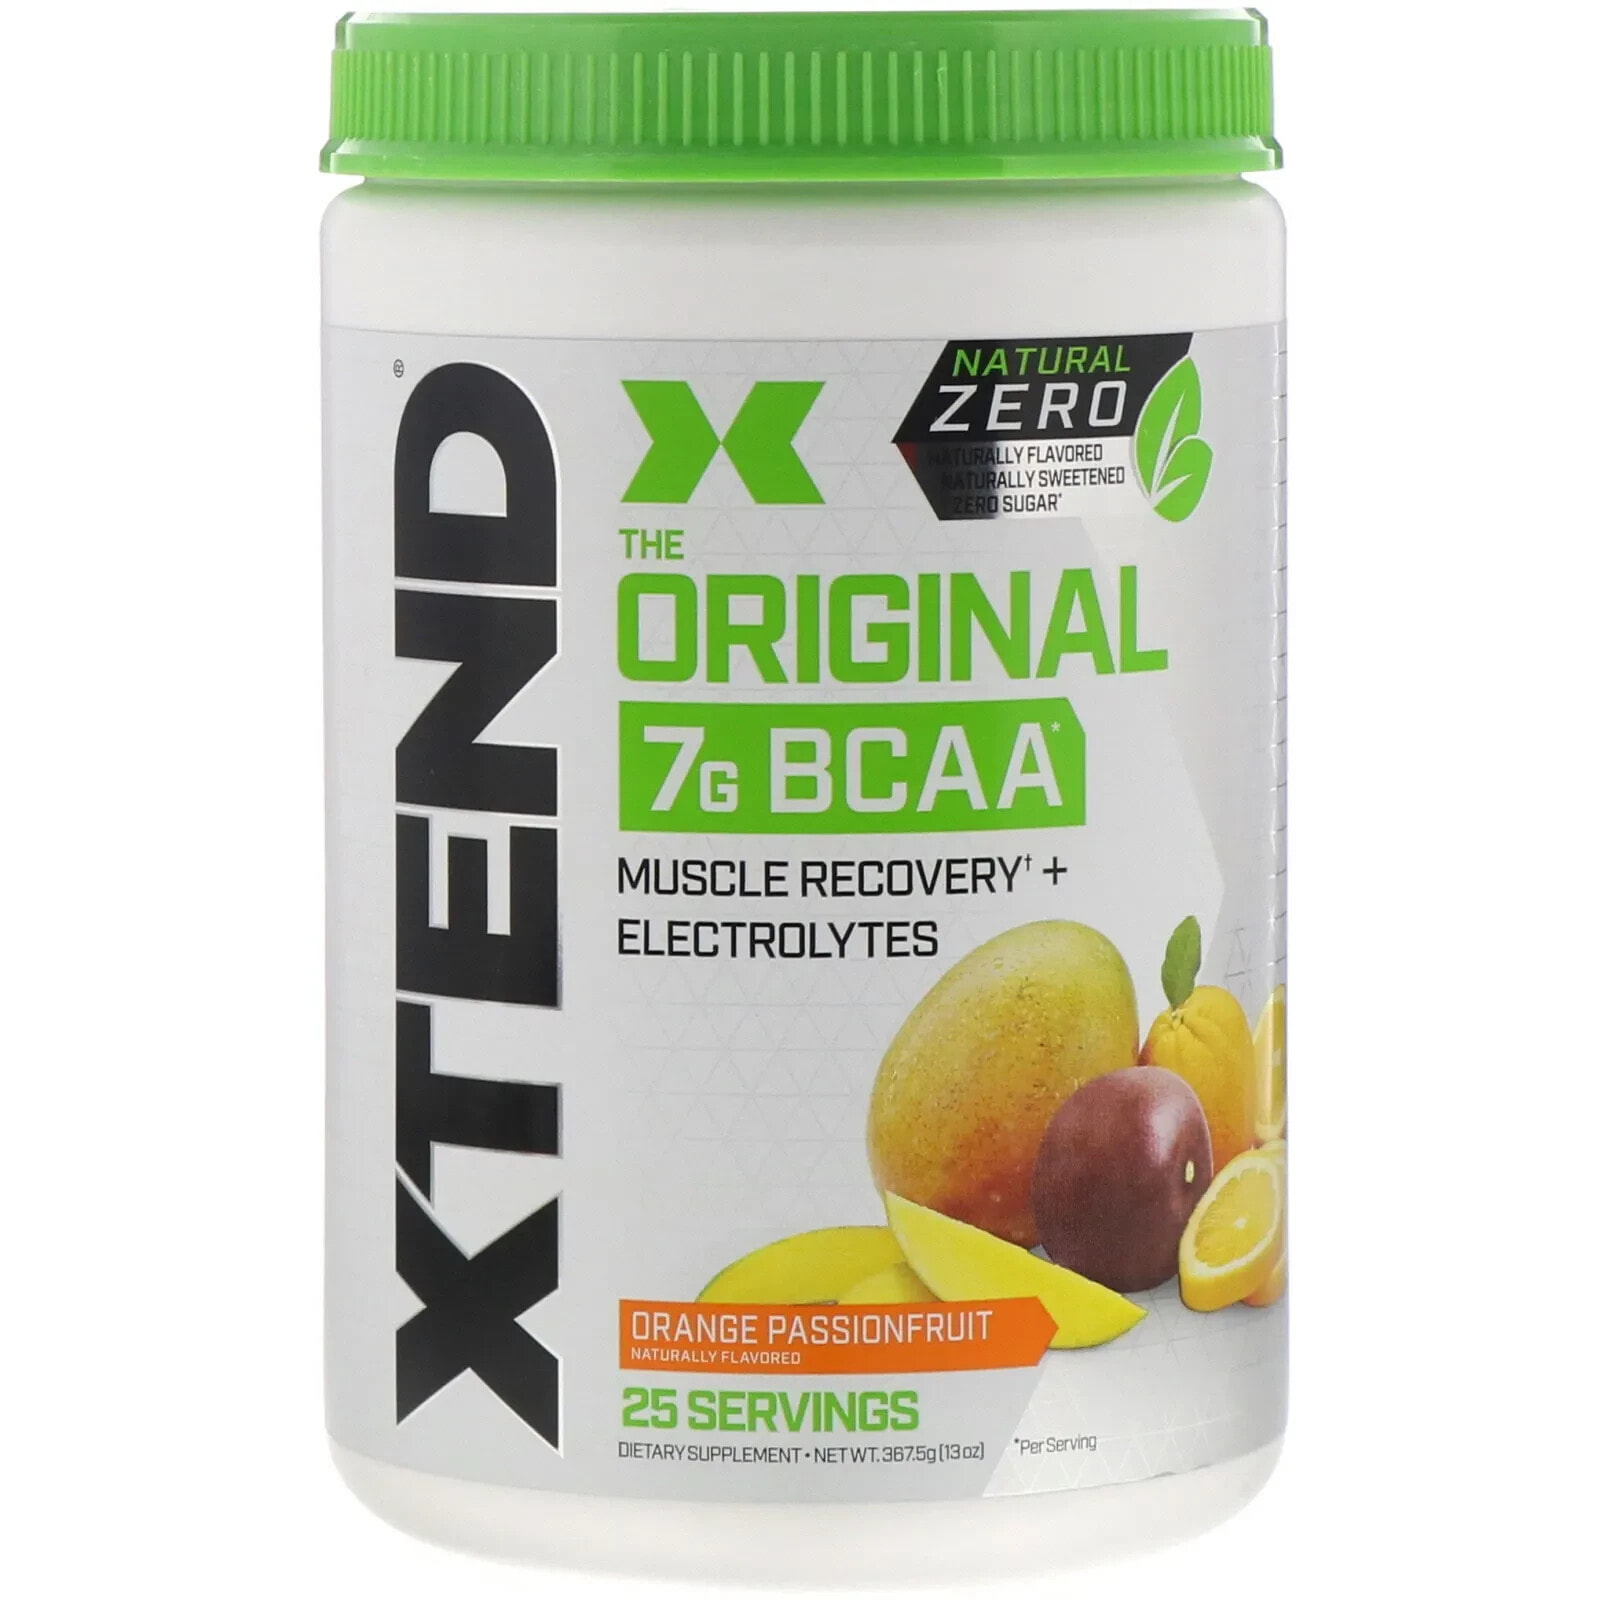 Xtend, The Original 7G BCAA, Natural Zero, Strawberry Kiwi Splash, 13 oz (367.5 g)